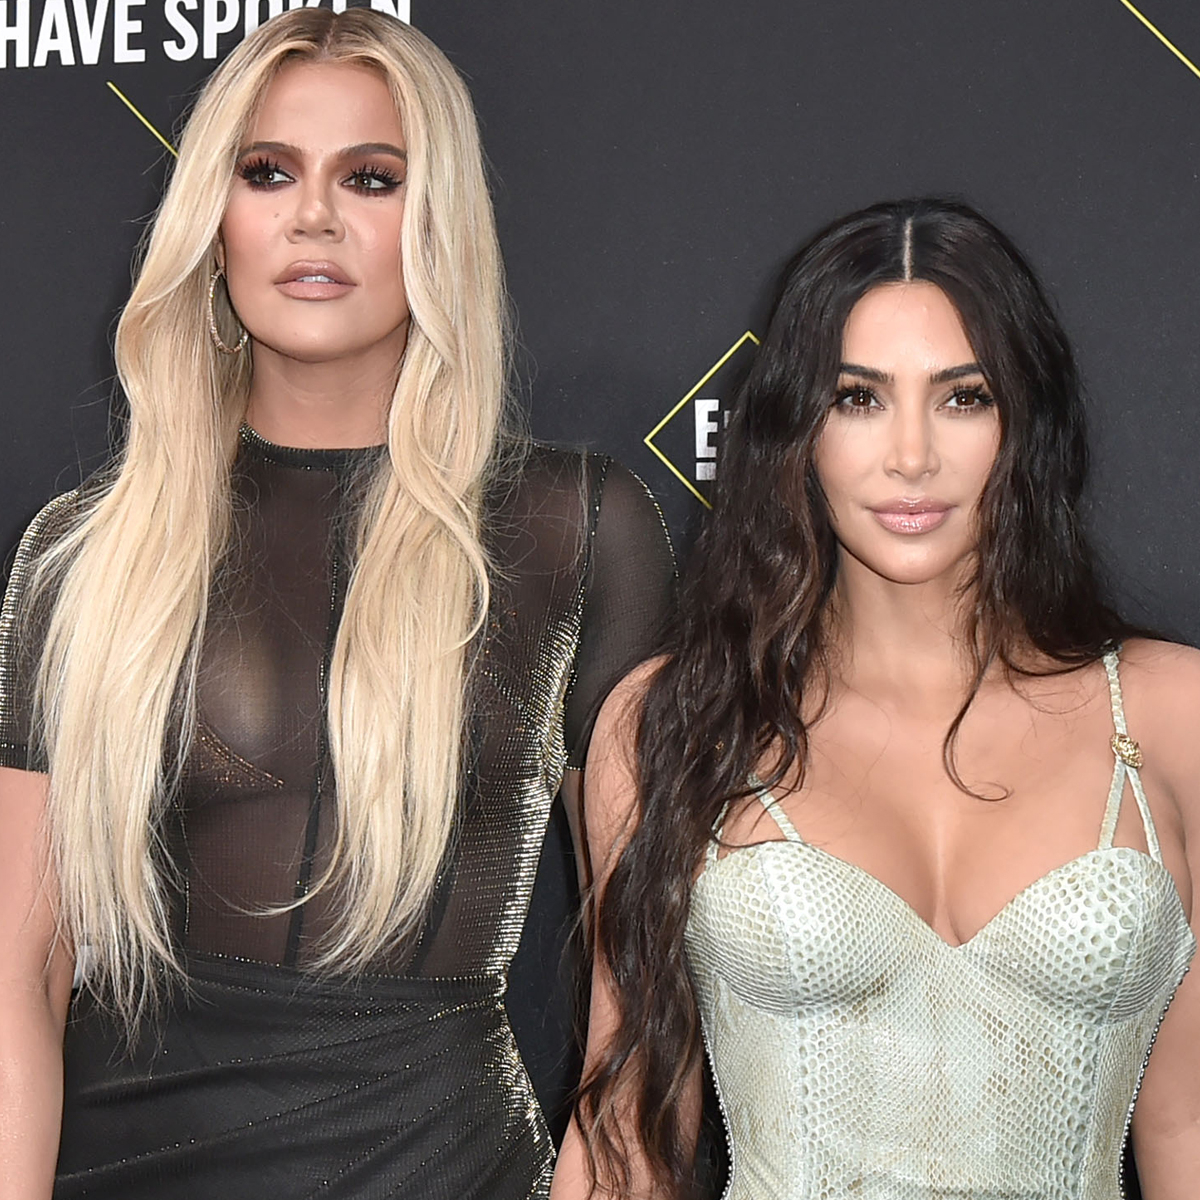 Khloe Kardashian Defends Kim Kardashian From Body-Shaming Comment